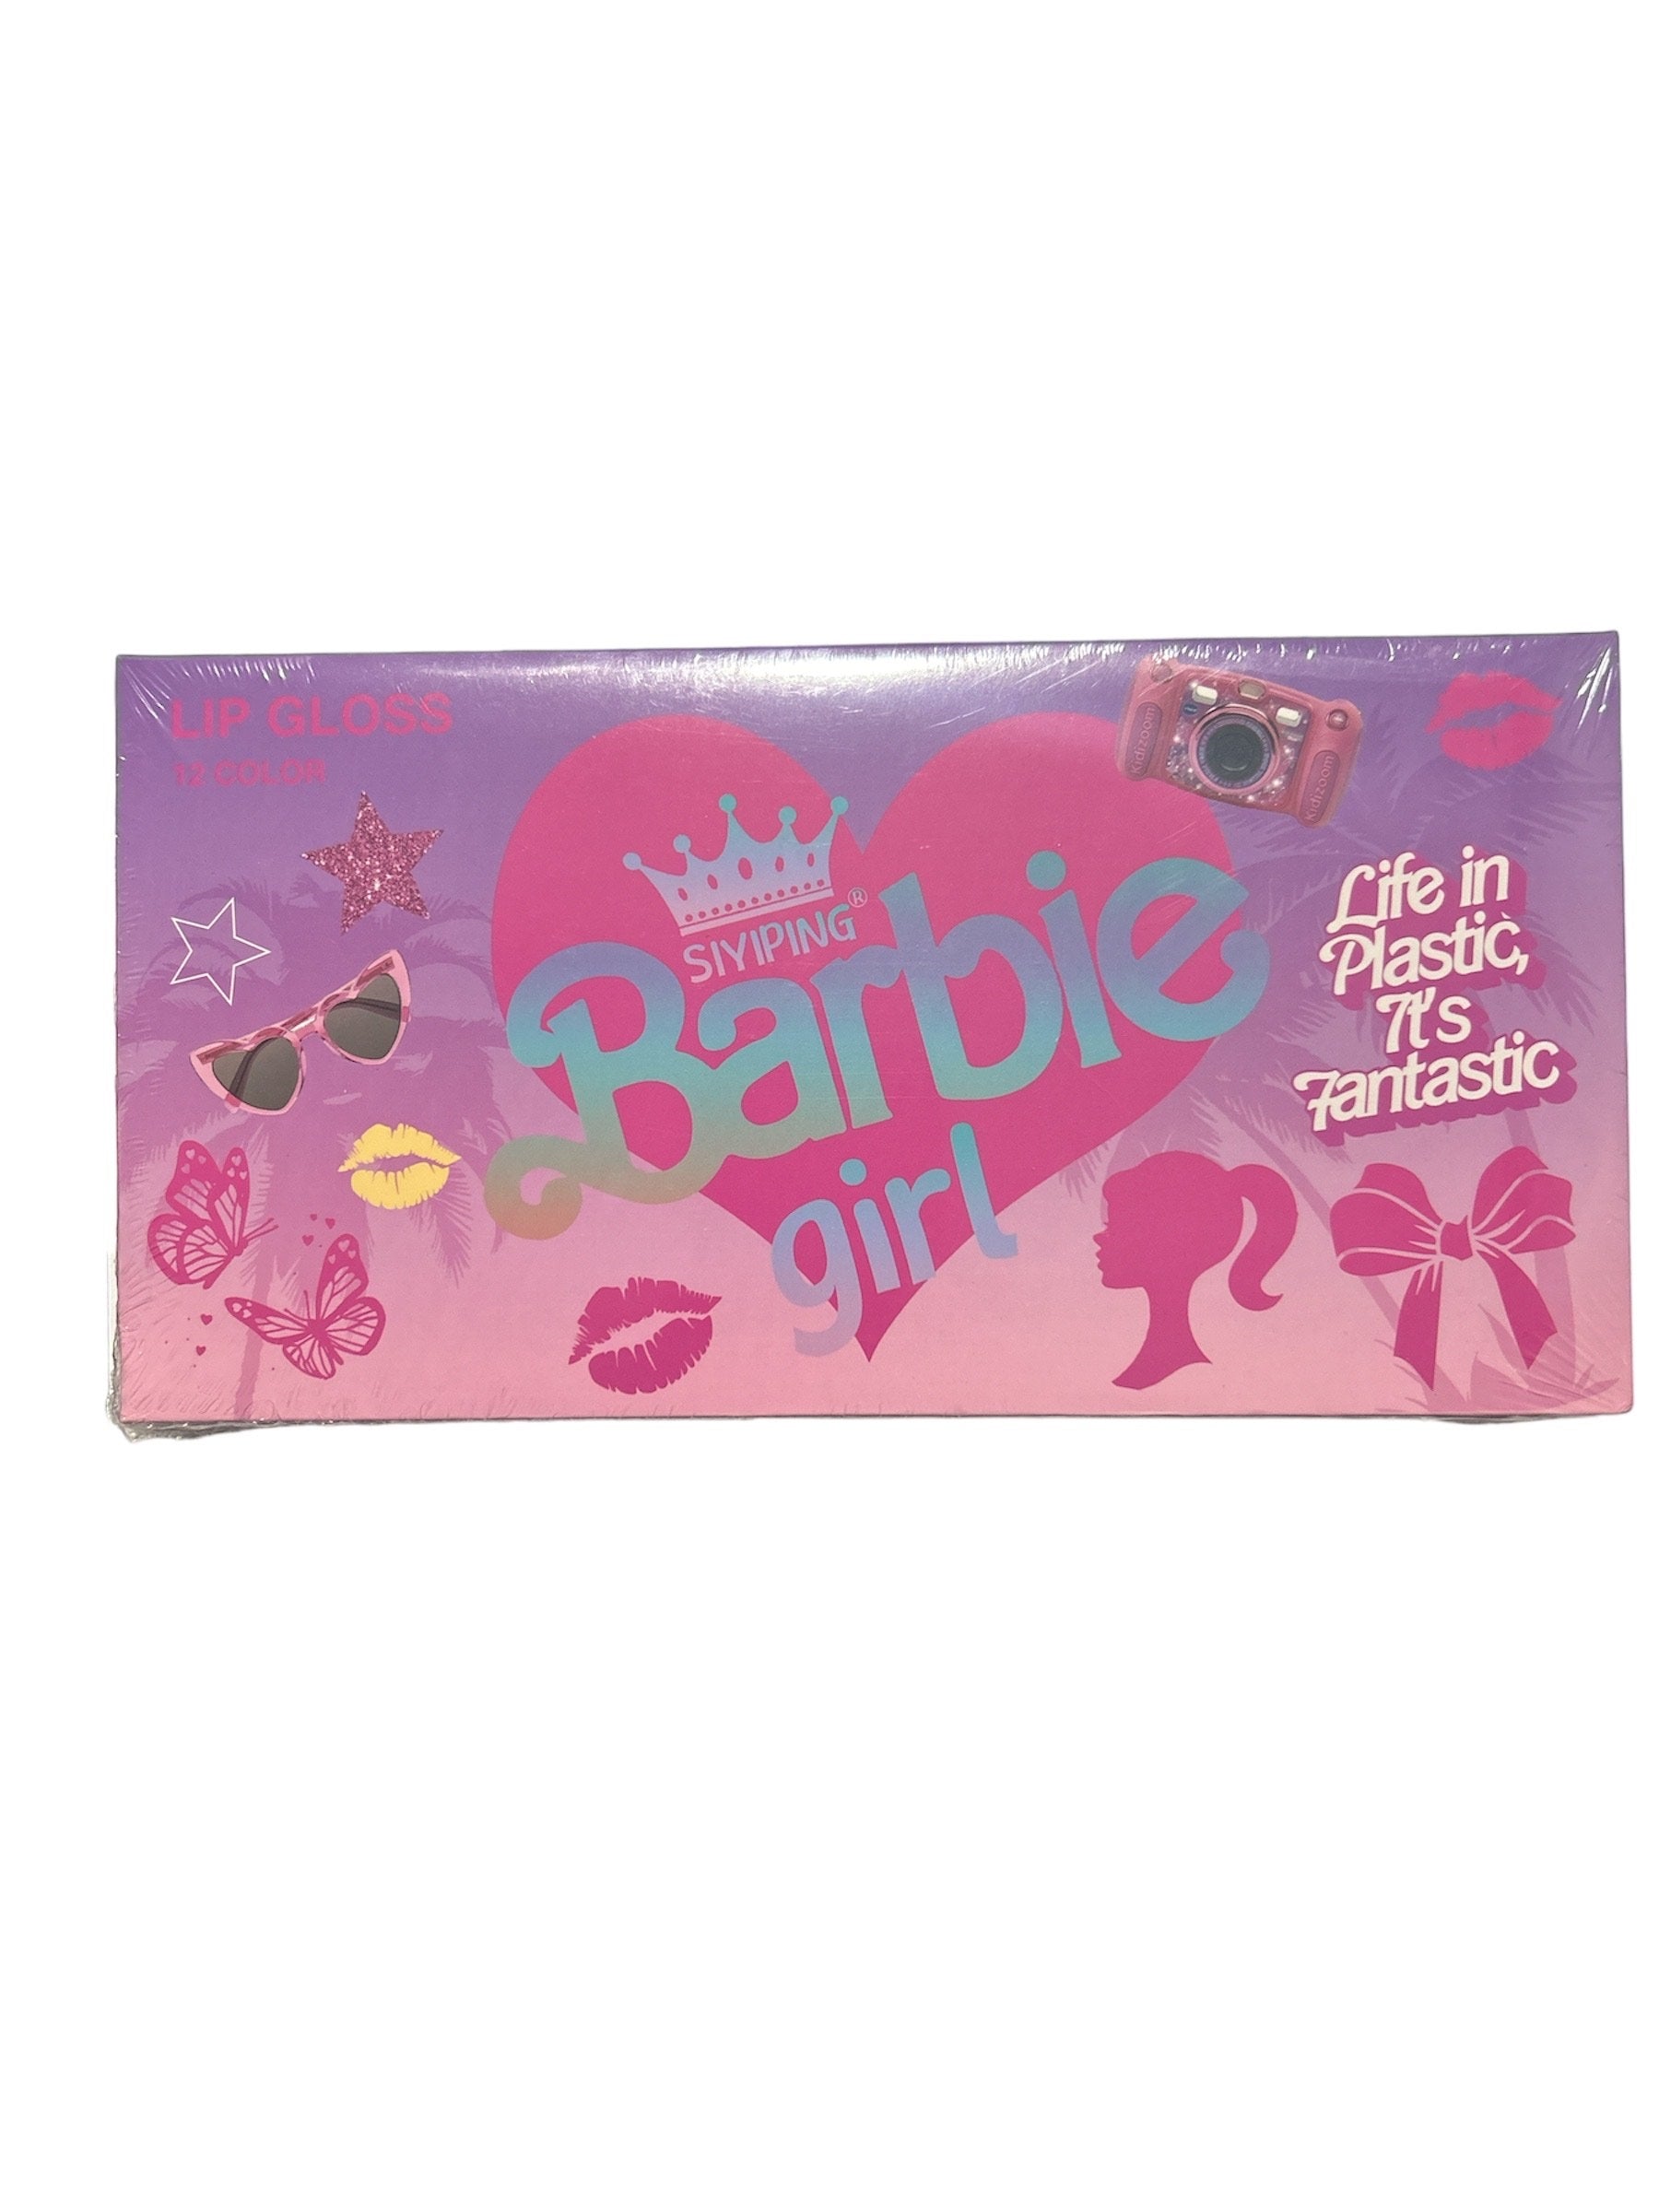 Siyiping x Barbie 12-Piece Lipstick Box Set